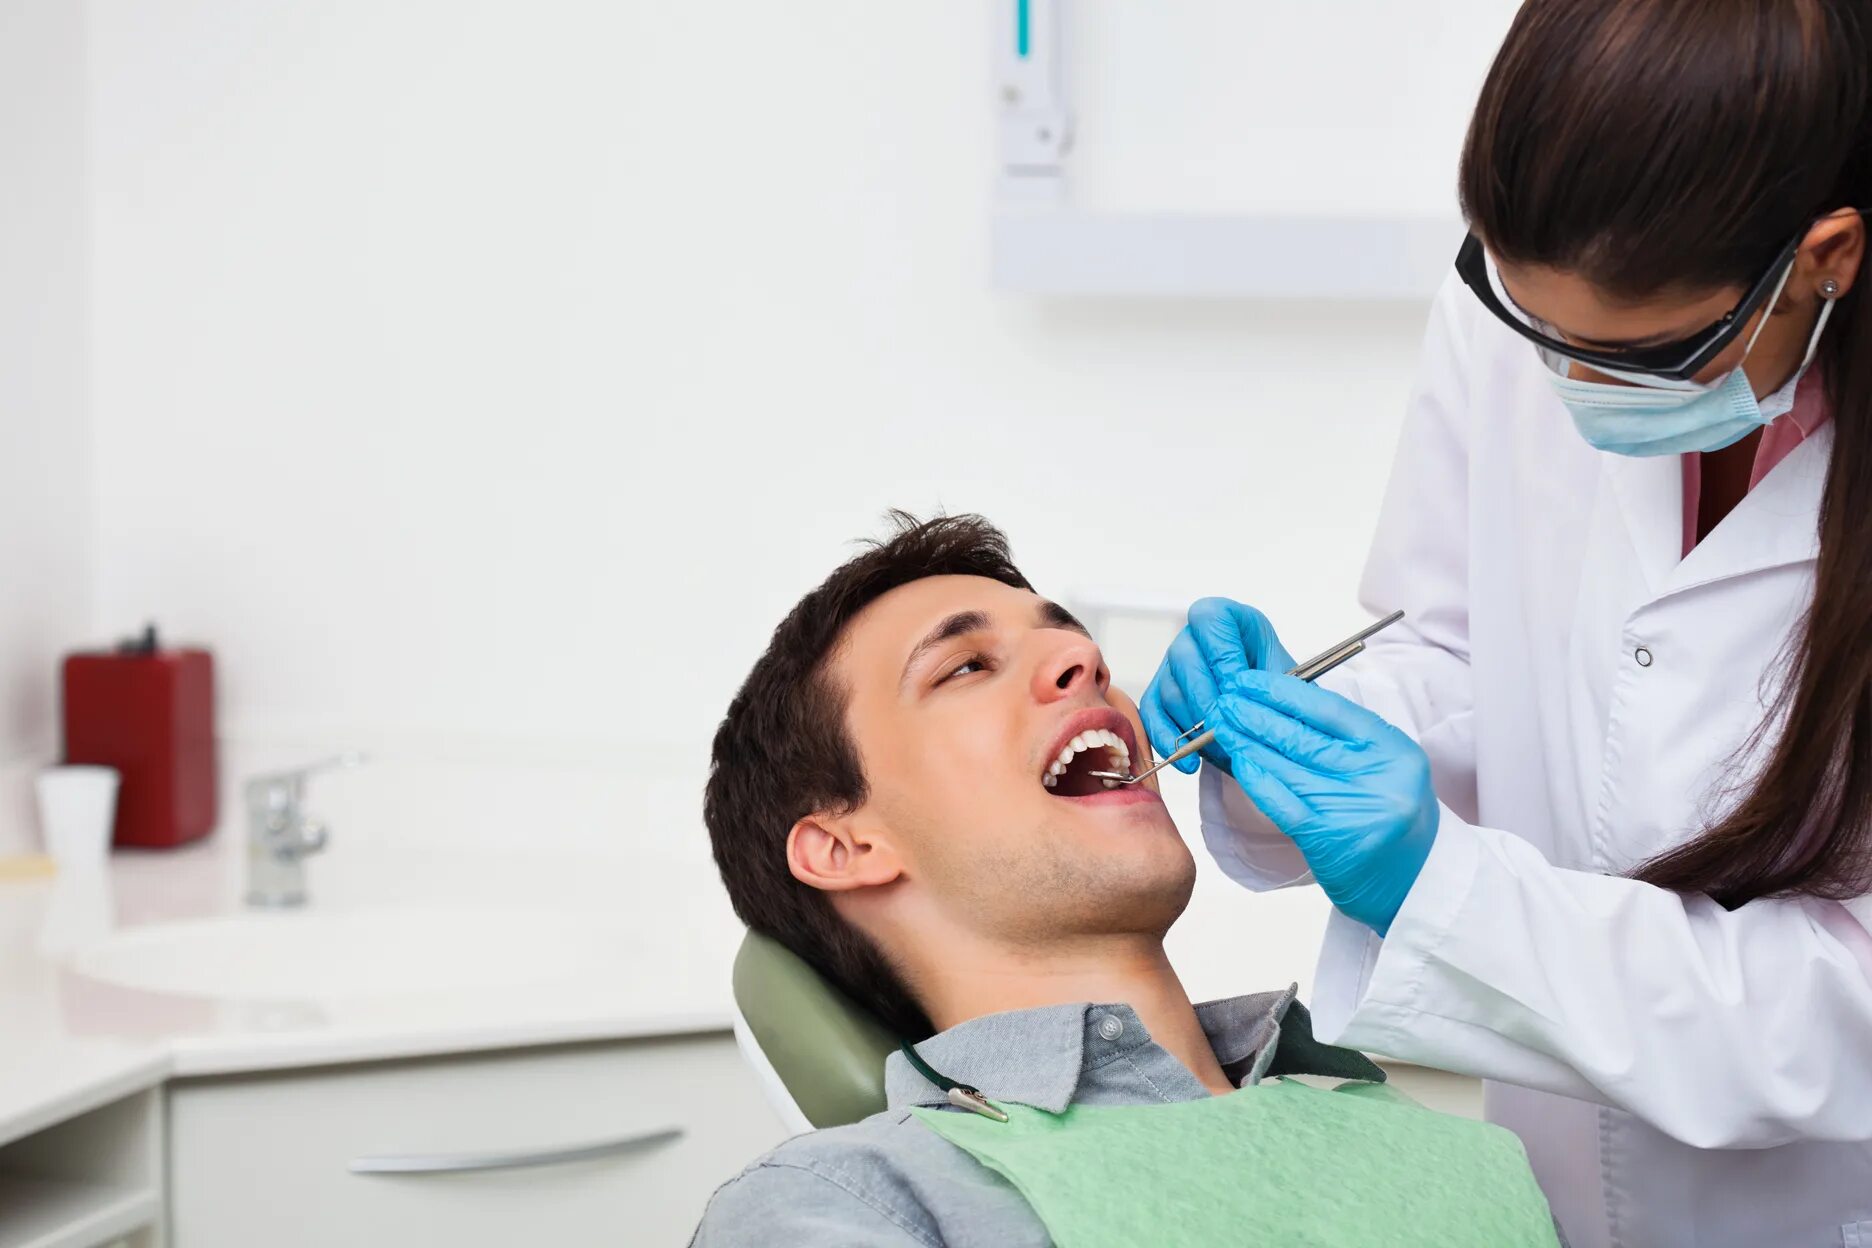 Стоматологического больного. Стоматолог и пациент. Осмотр стоматолога. Пациент на приеме у стоматолога. Профессия стоматолог.